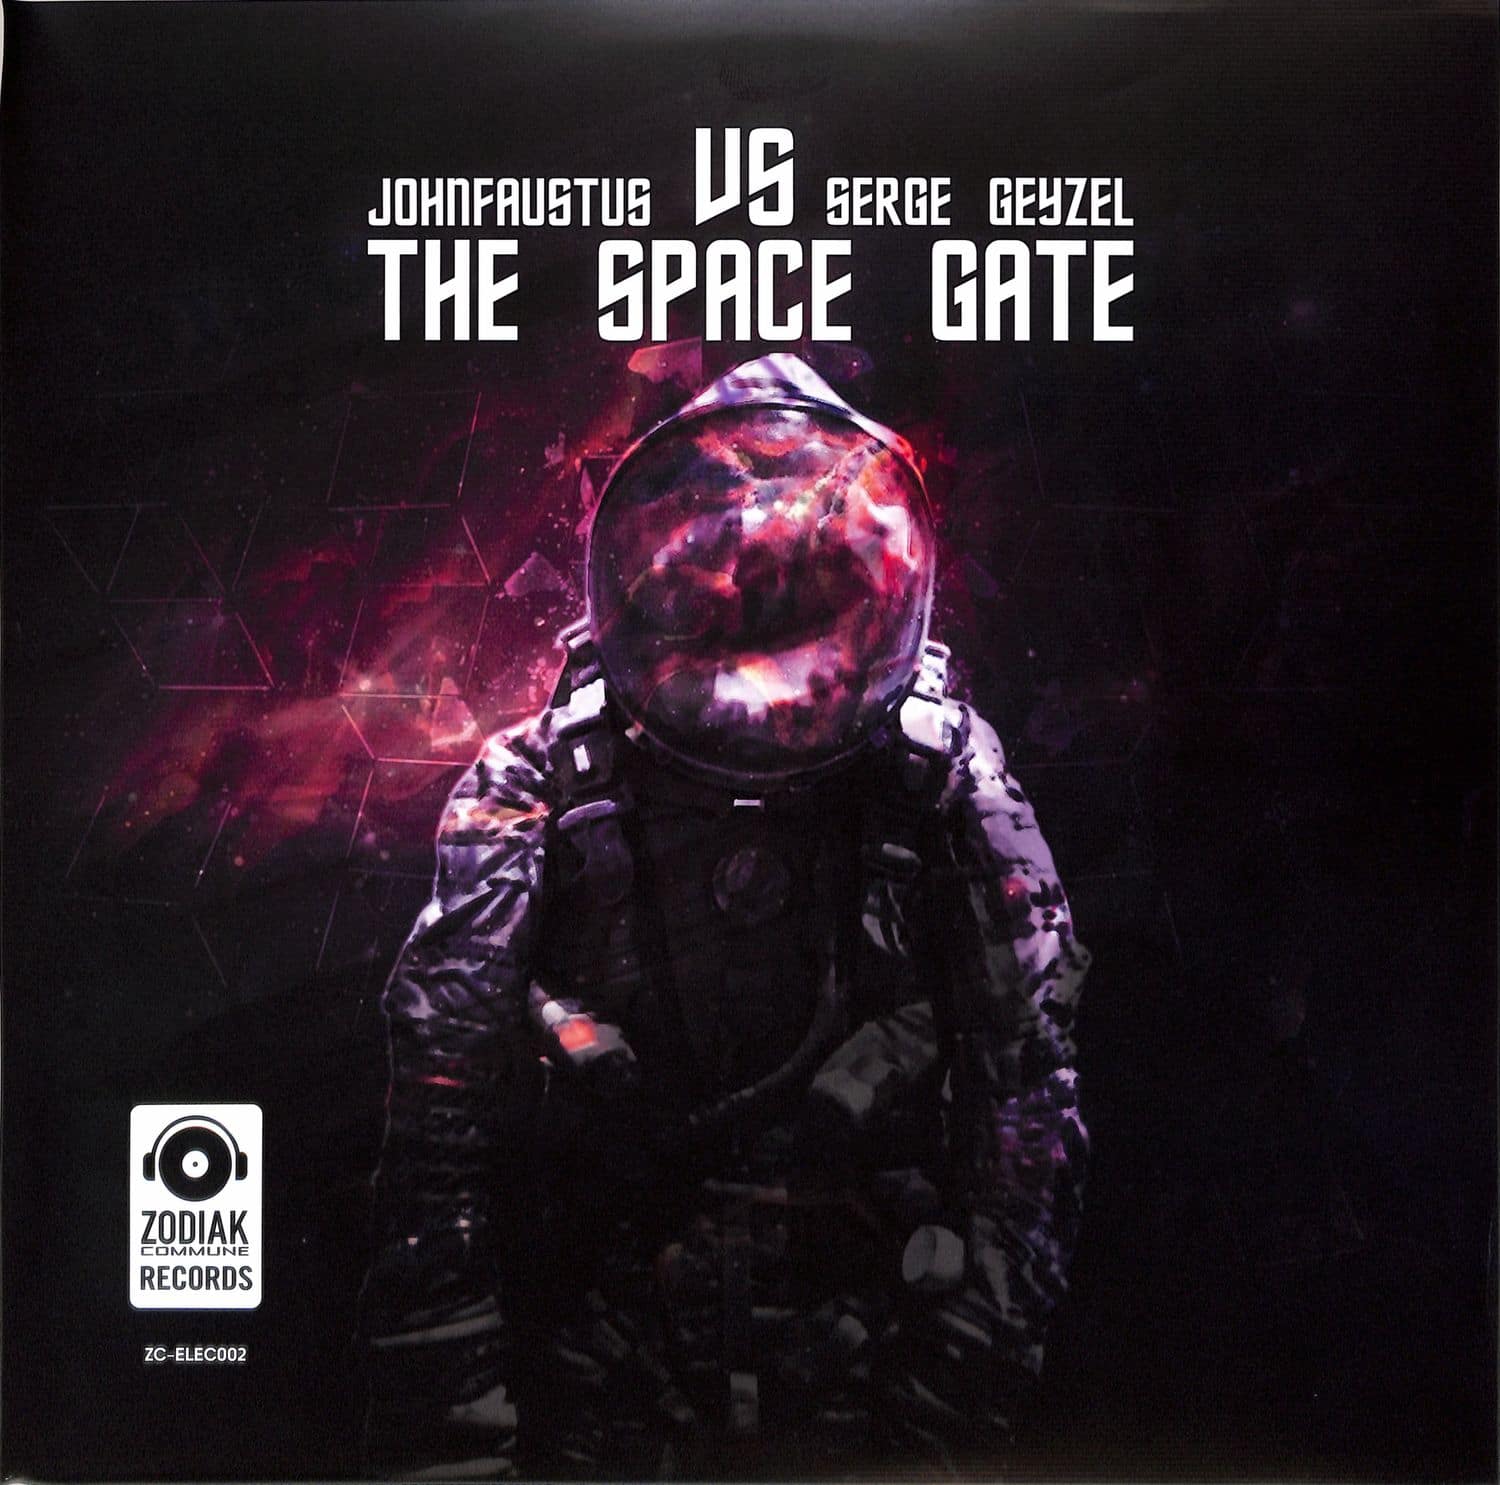 johnfaustus & Serge Geyzel - THE SPACE GATE 